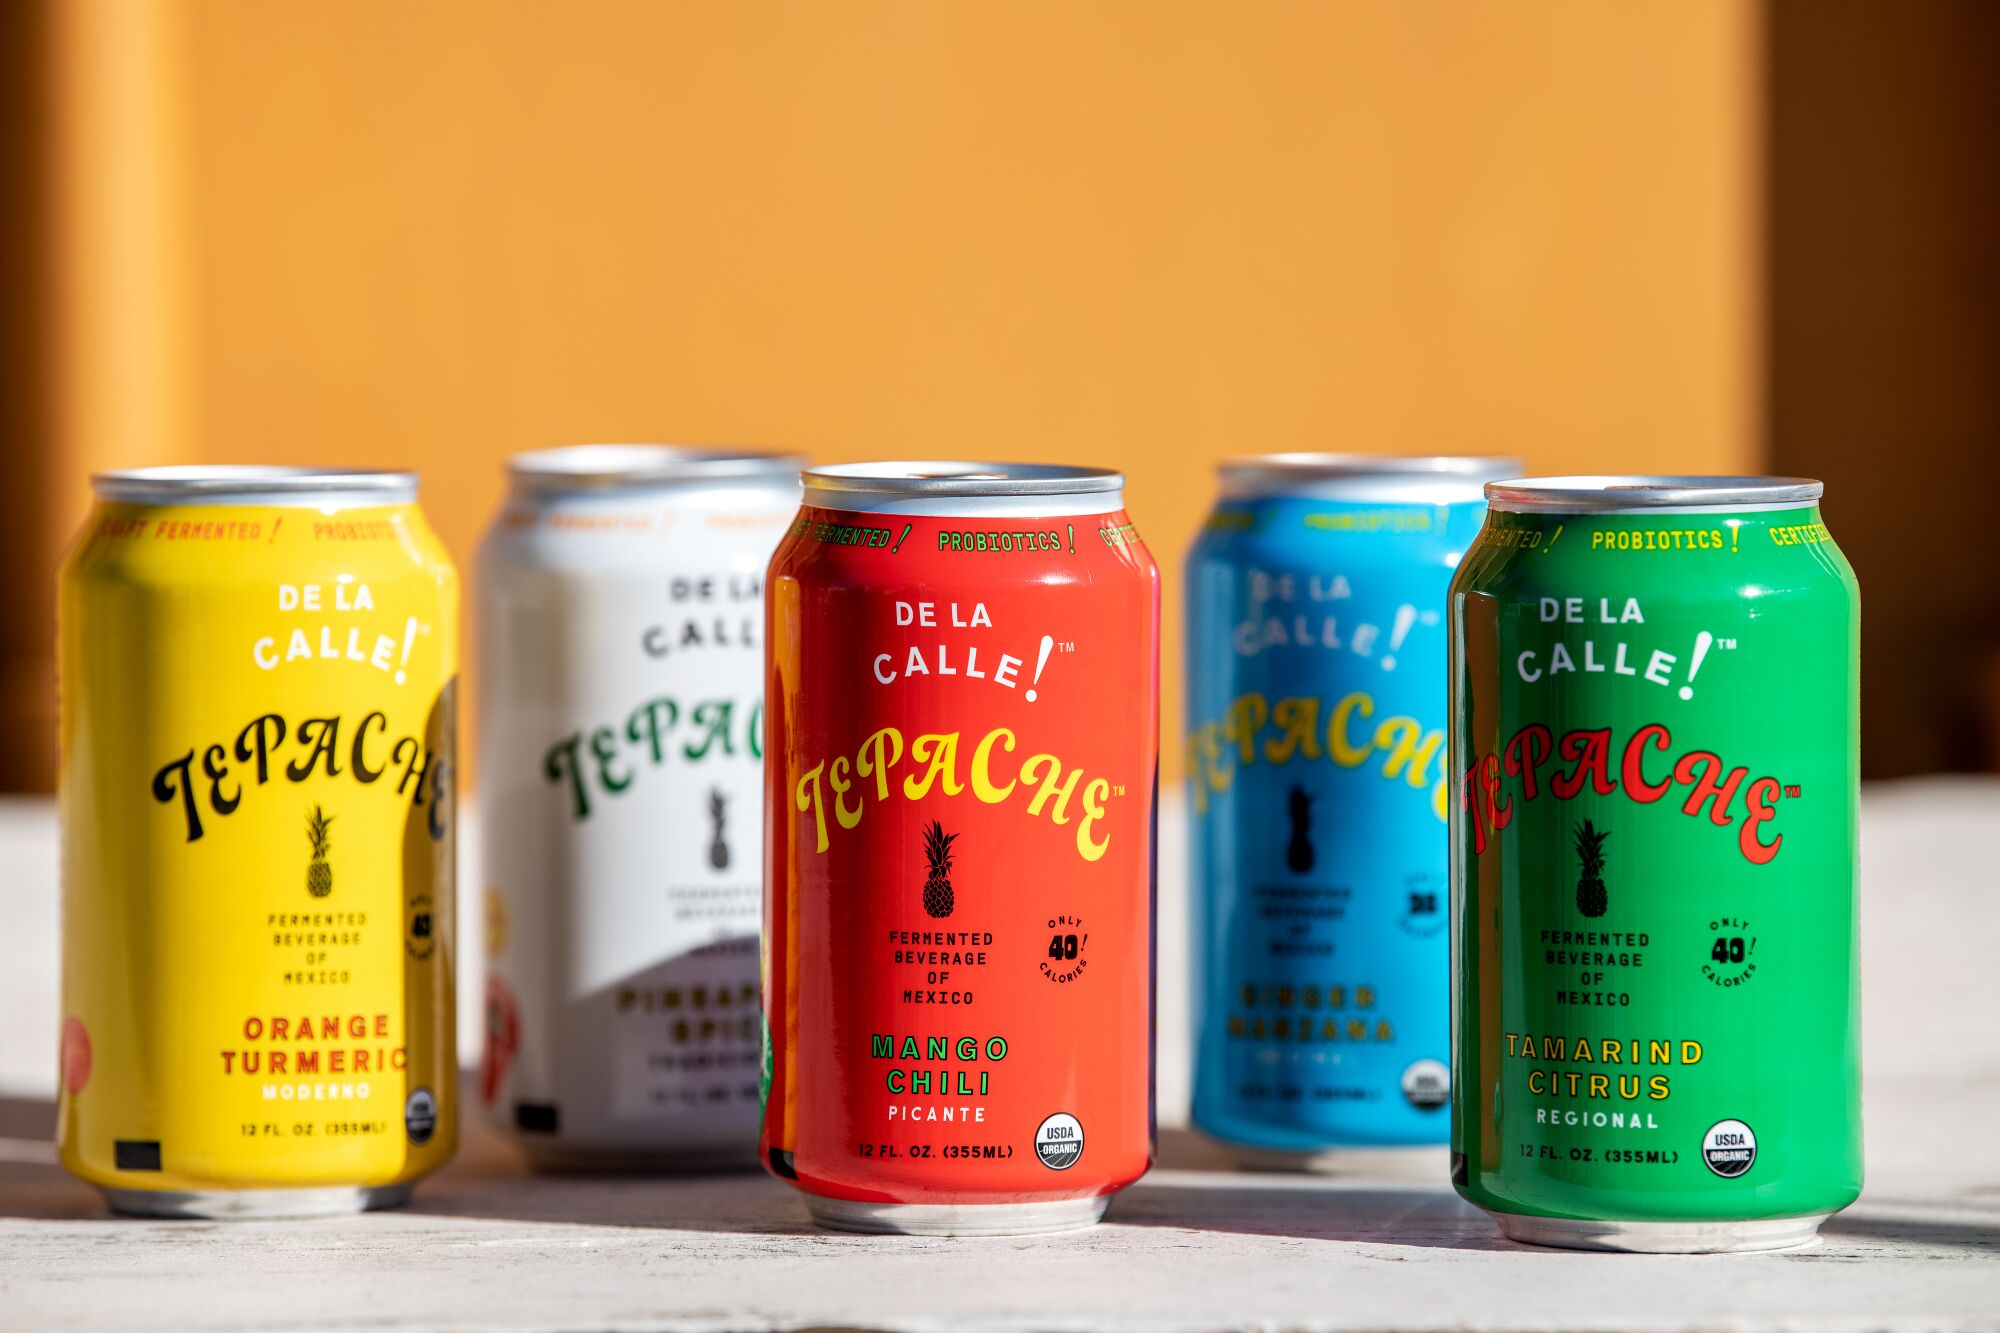 Five colorful cans of De La Calle tepache.